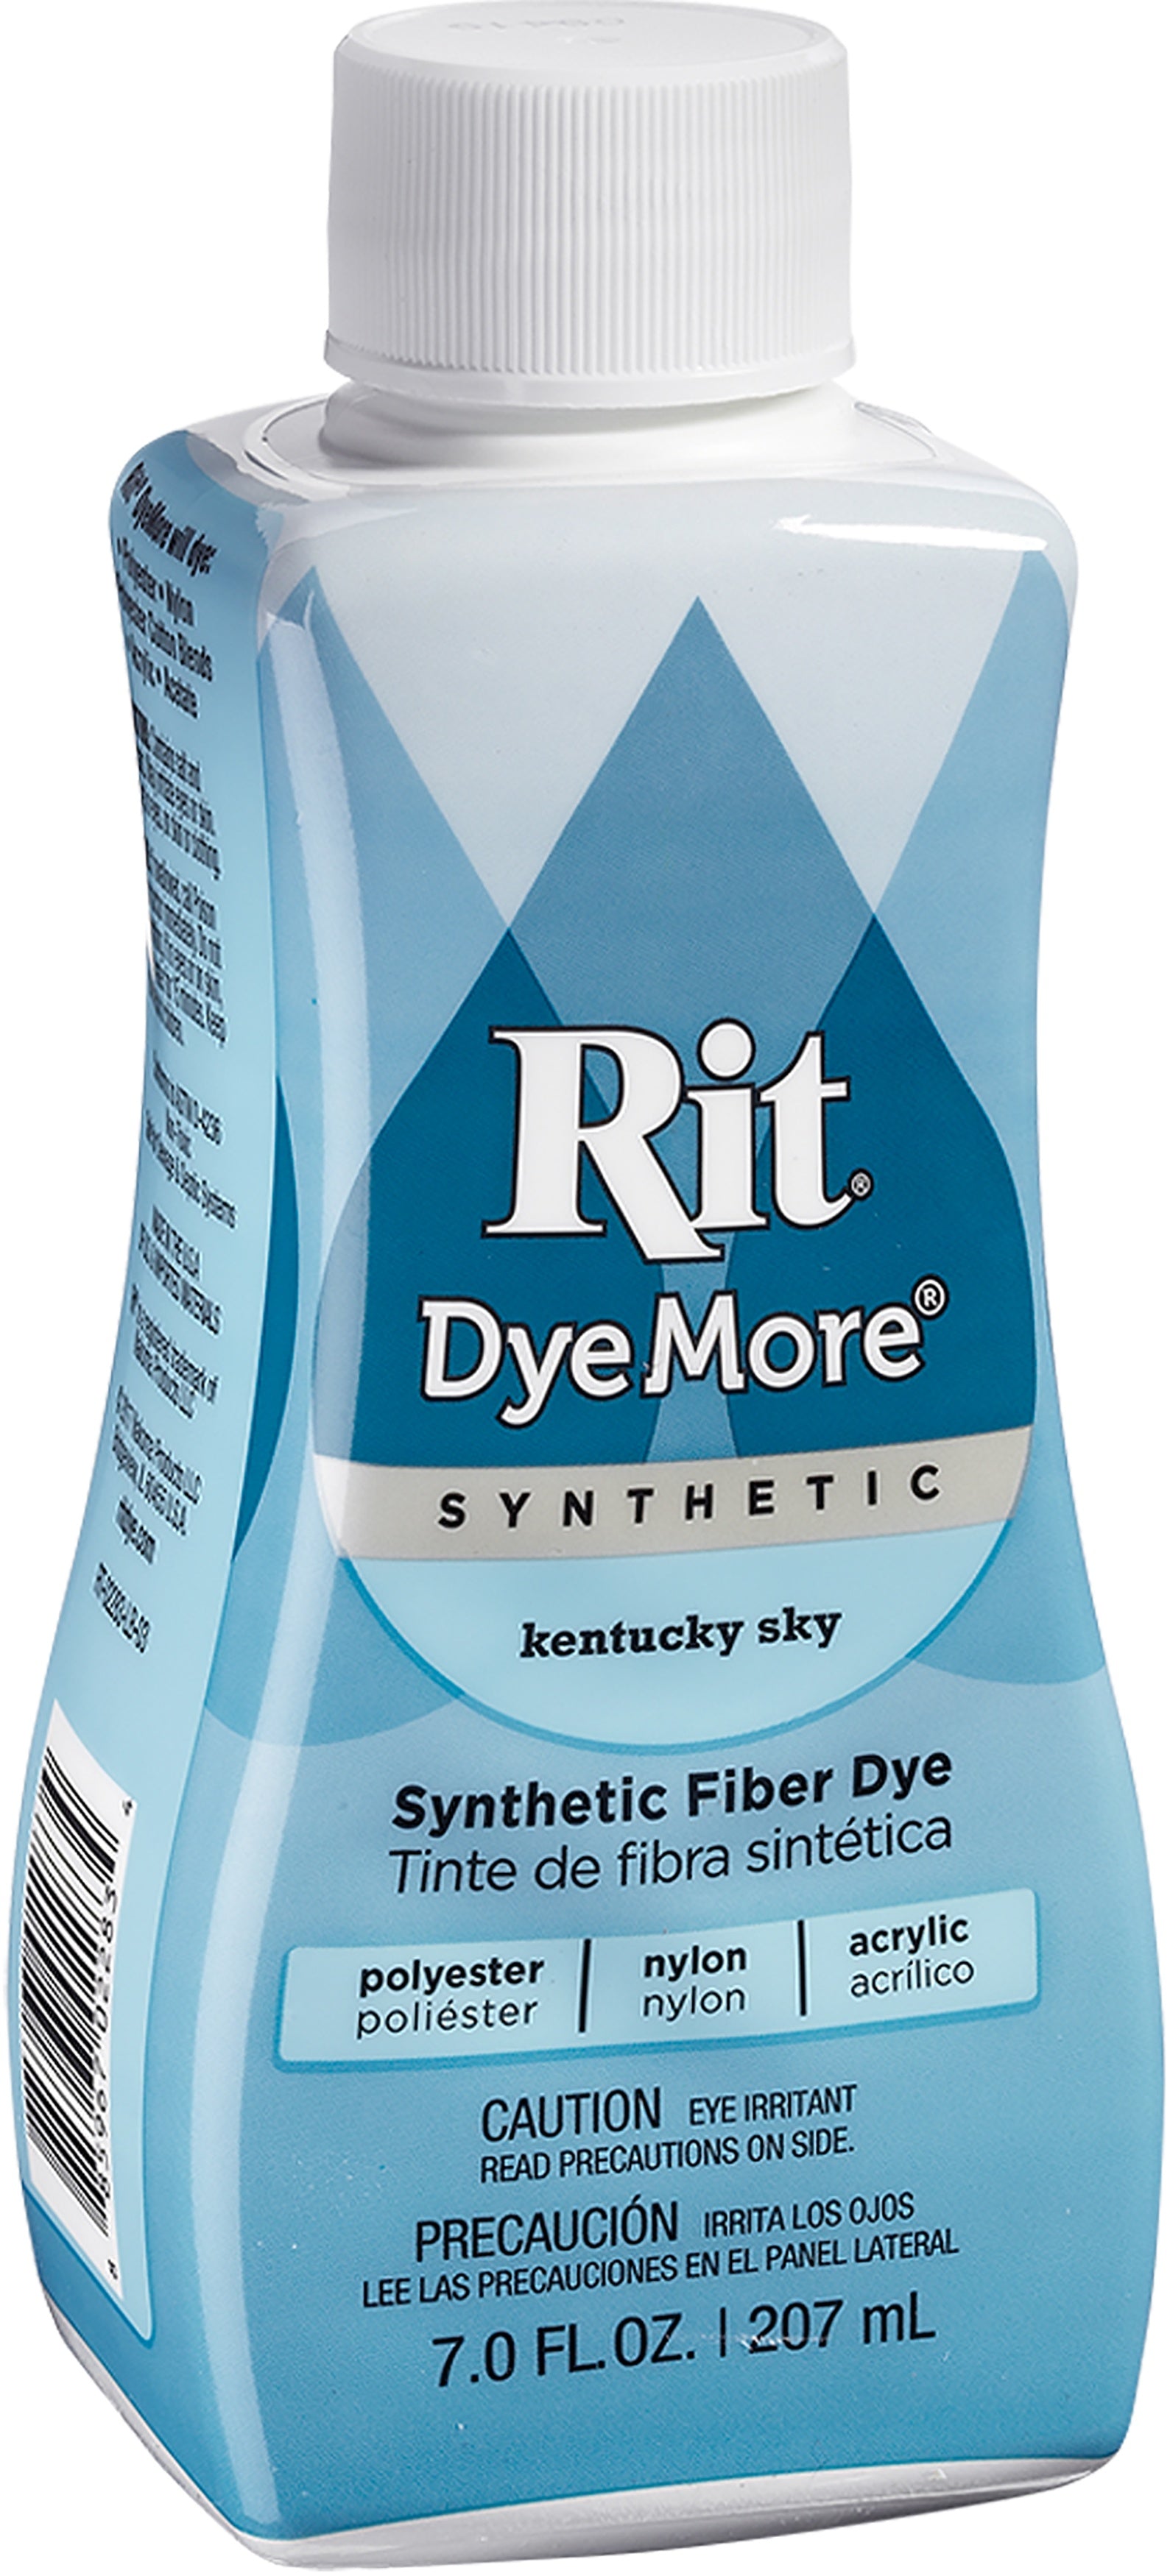 Rit DyeMore Synthetic Fiber Dye - Tropic Teal, 7 oz